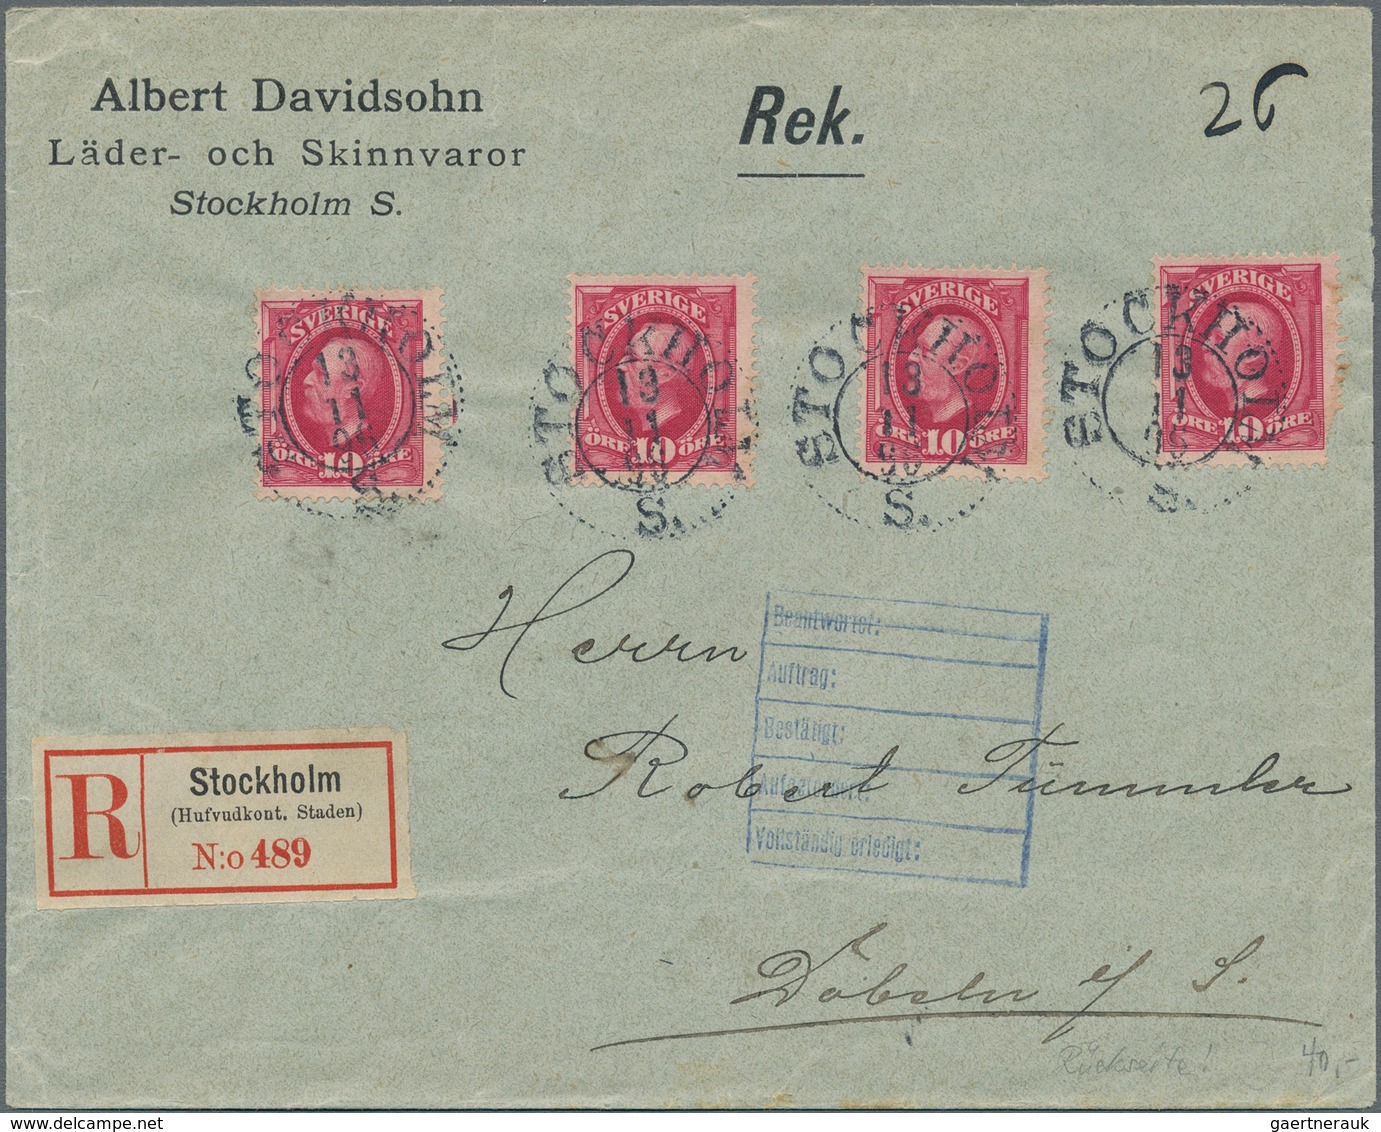 Schweden: 1891, 10 Öre Carmine - 4 Items On Registered Letter "Stockholm (Hufvudkont, Staden)" On Le - Gebruikt